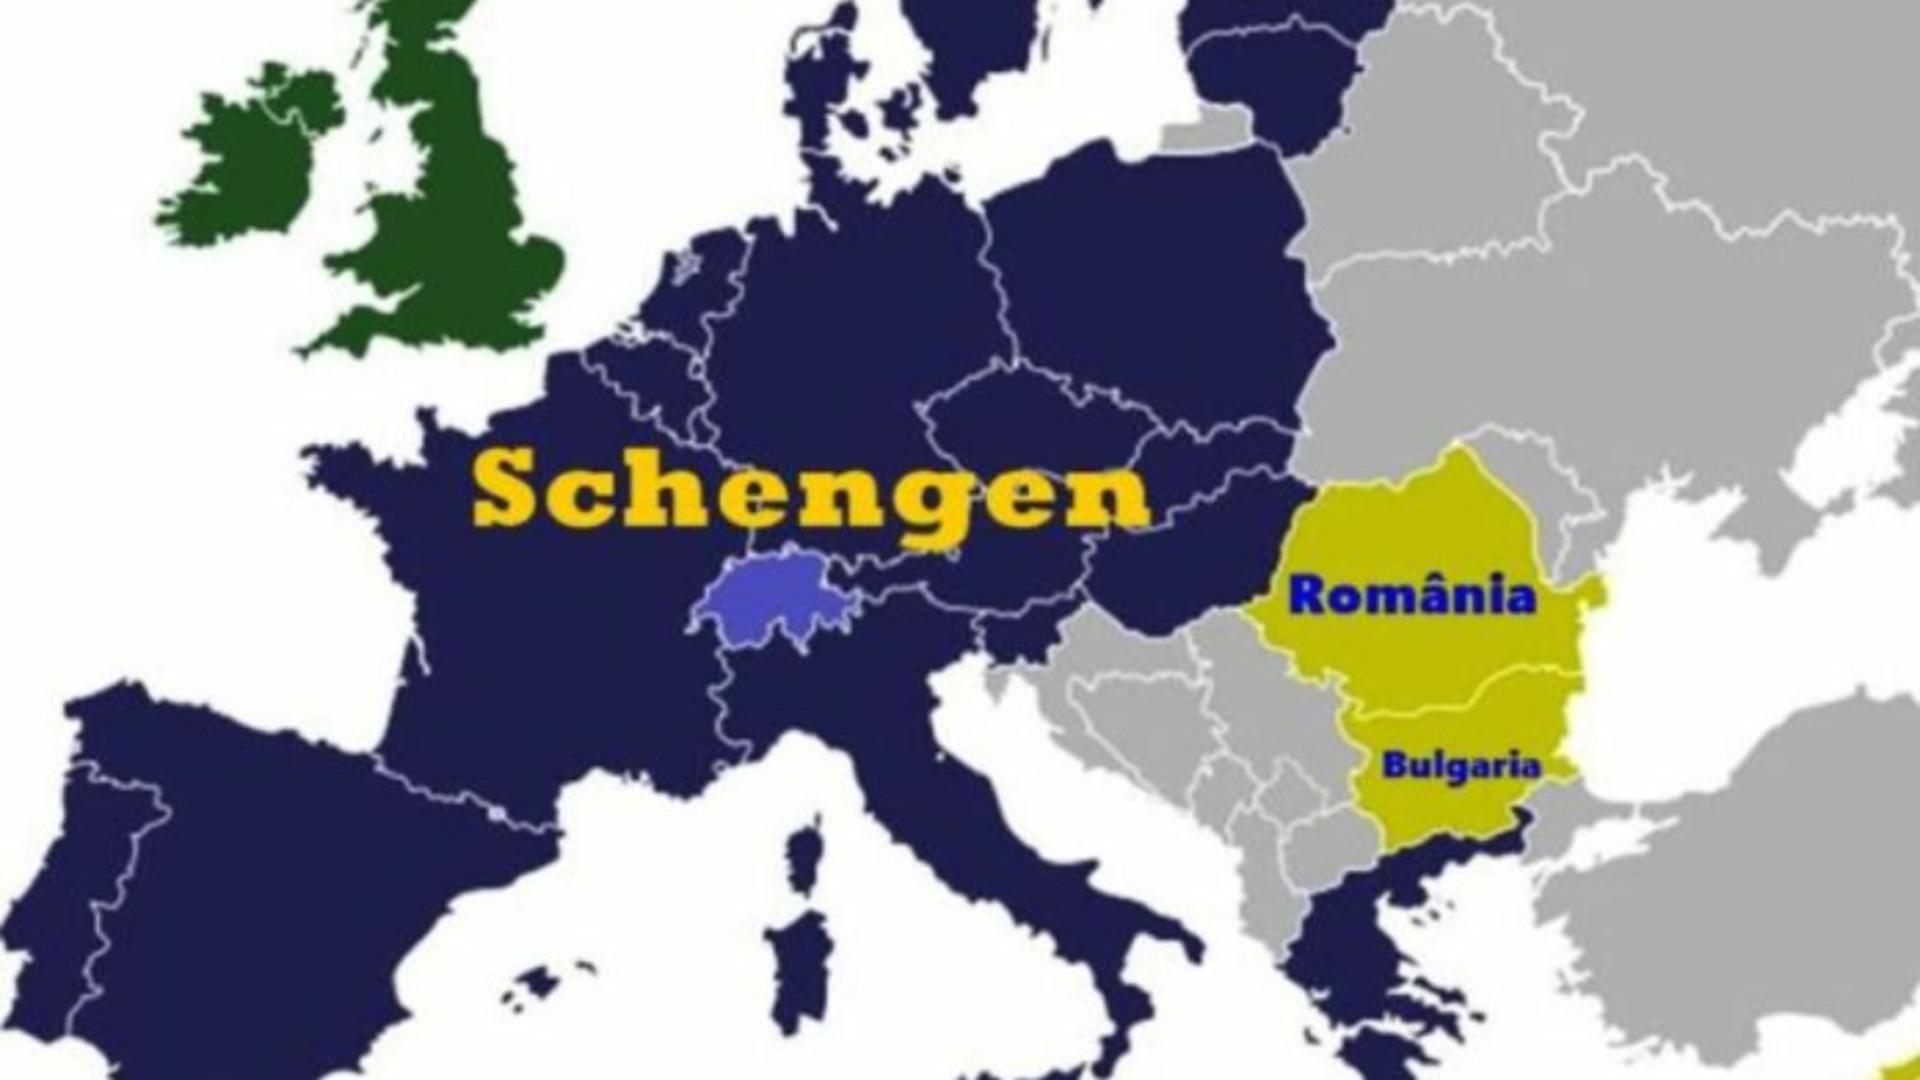 România și Bulgaria bat, fără succes, de 11 ani la ușa Schengen. Foto/Arhivă